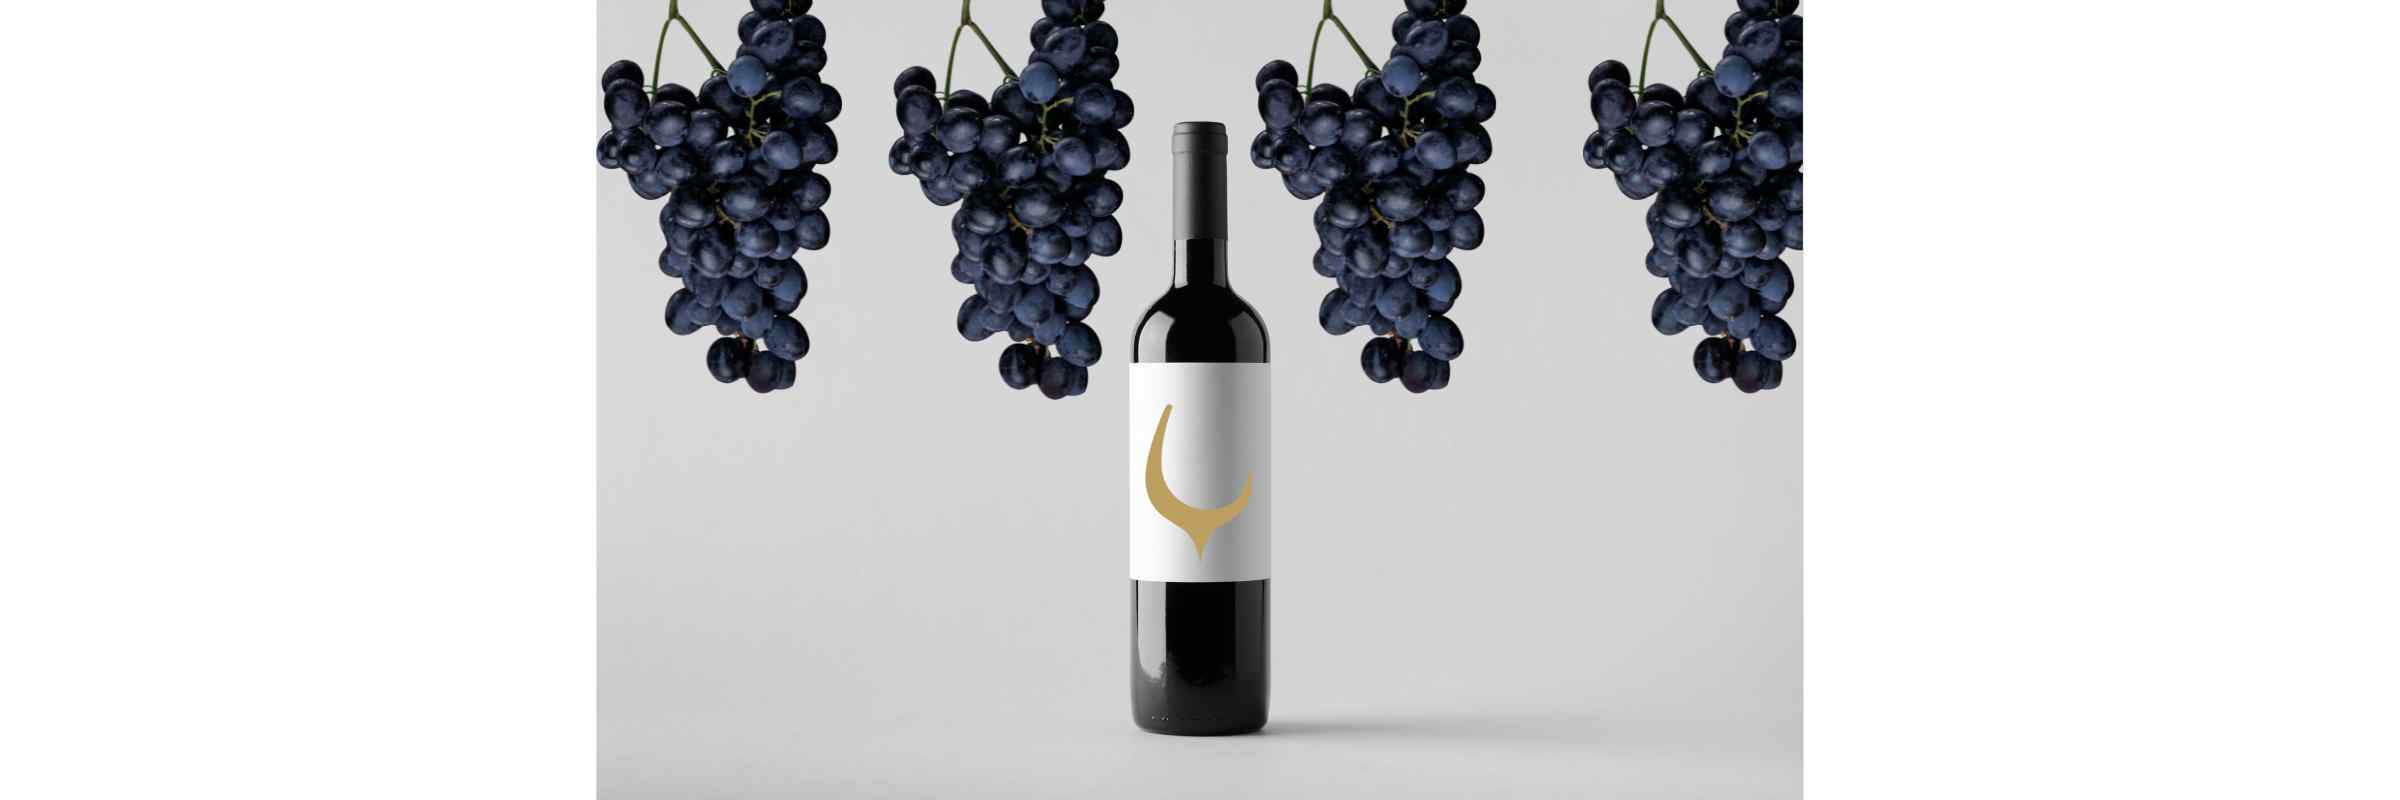 Grapes in 750ml Wine Bottle